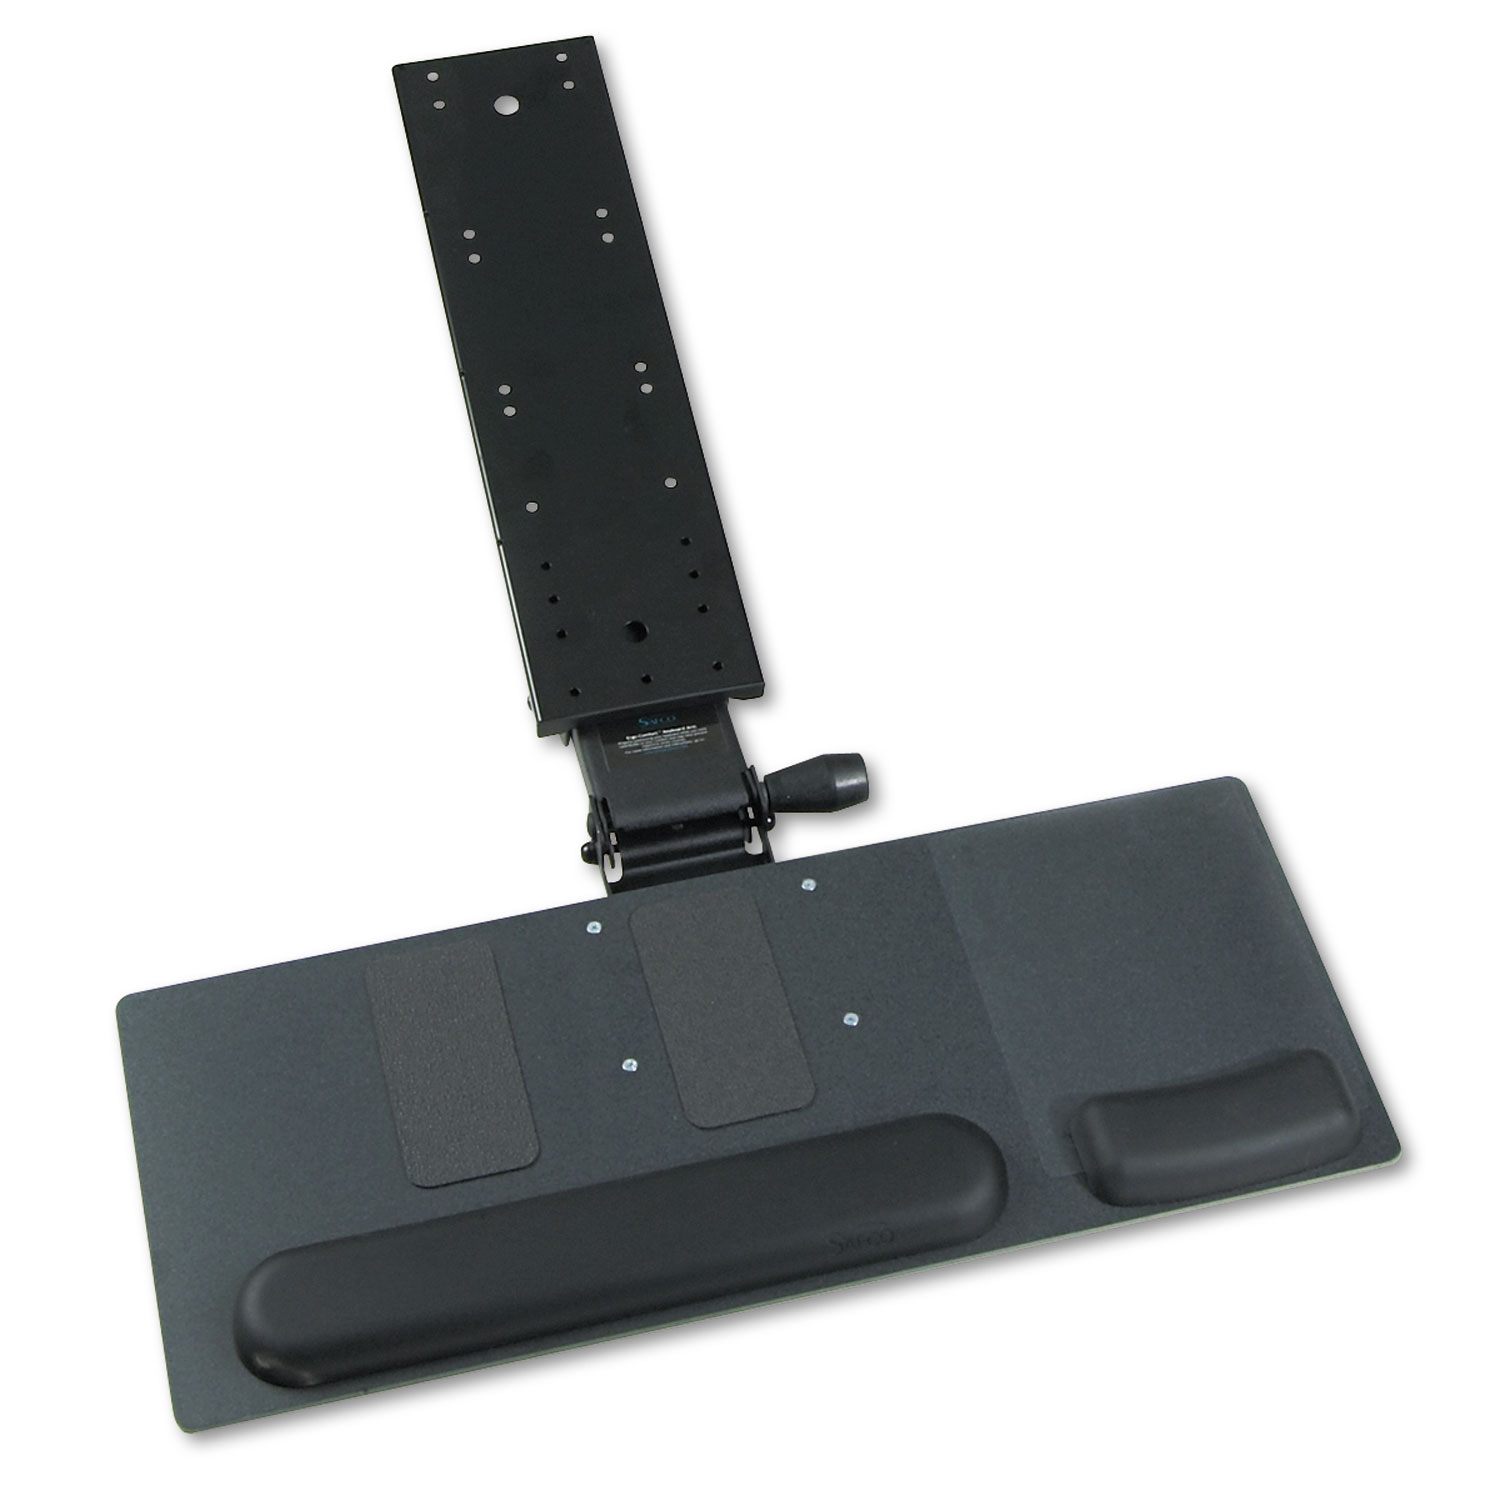  Safco 2137 Ergo-Comfort Articulating Keyboard/Mouse Platform, 28w x 11.75d, Black Granite (SAF2137) 